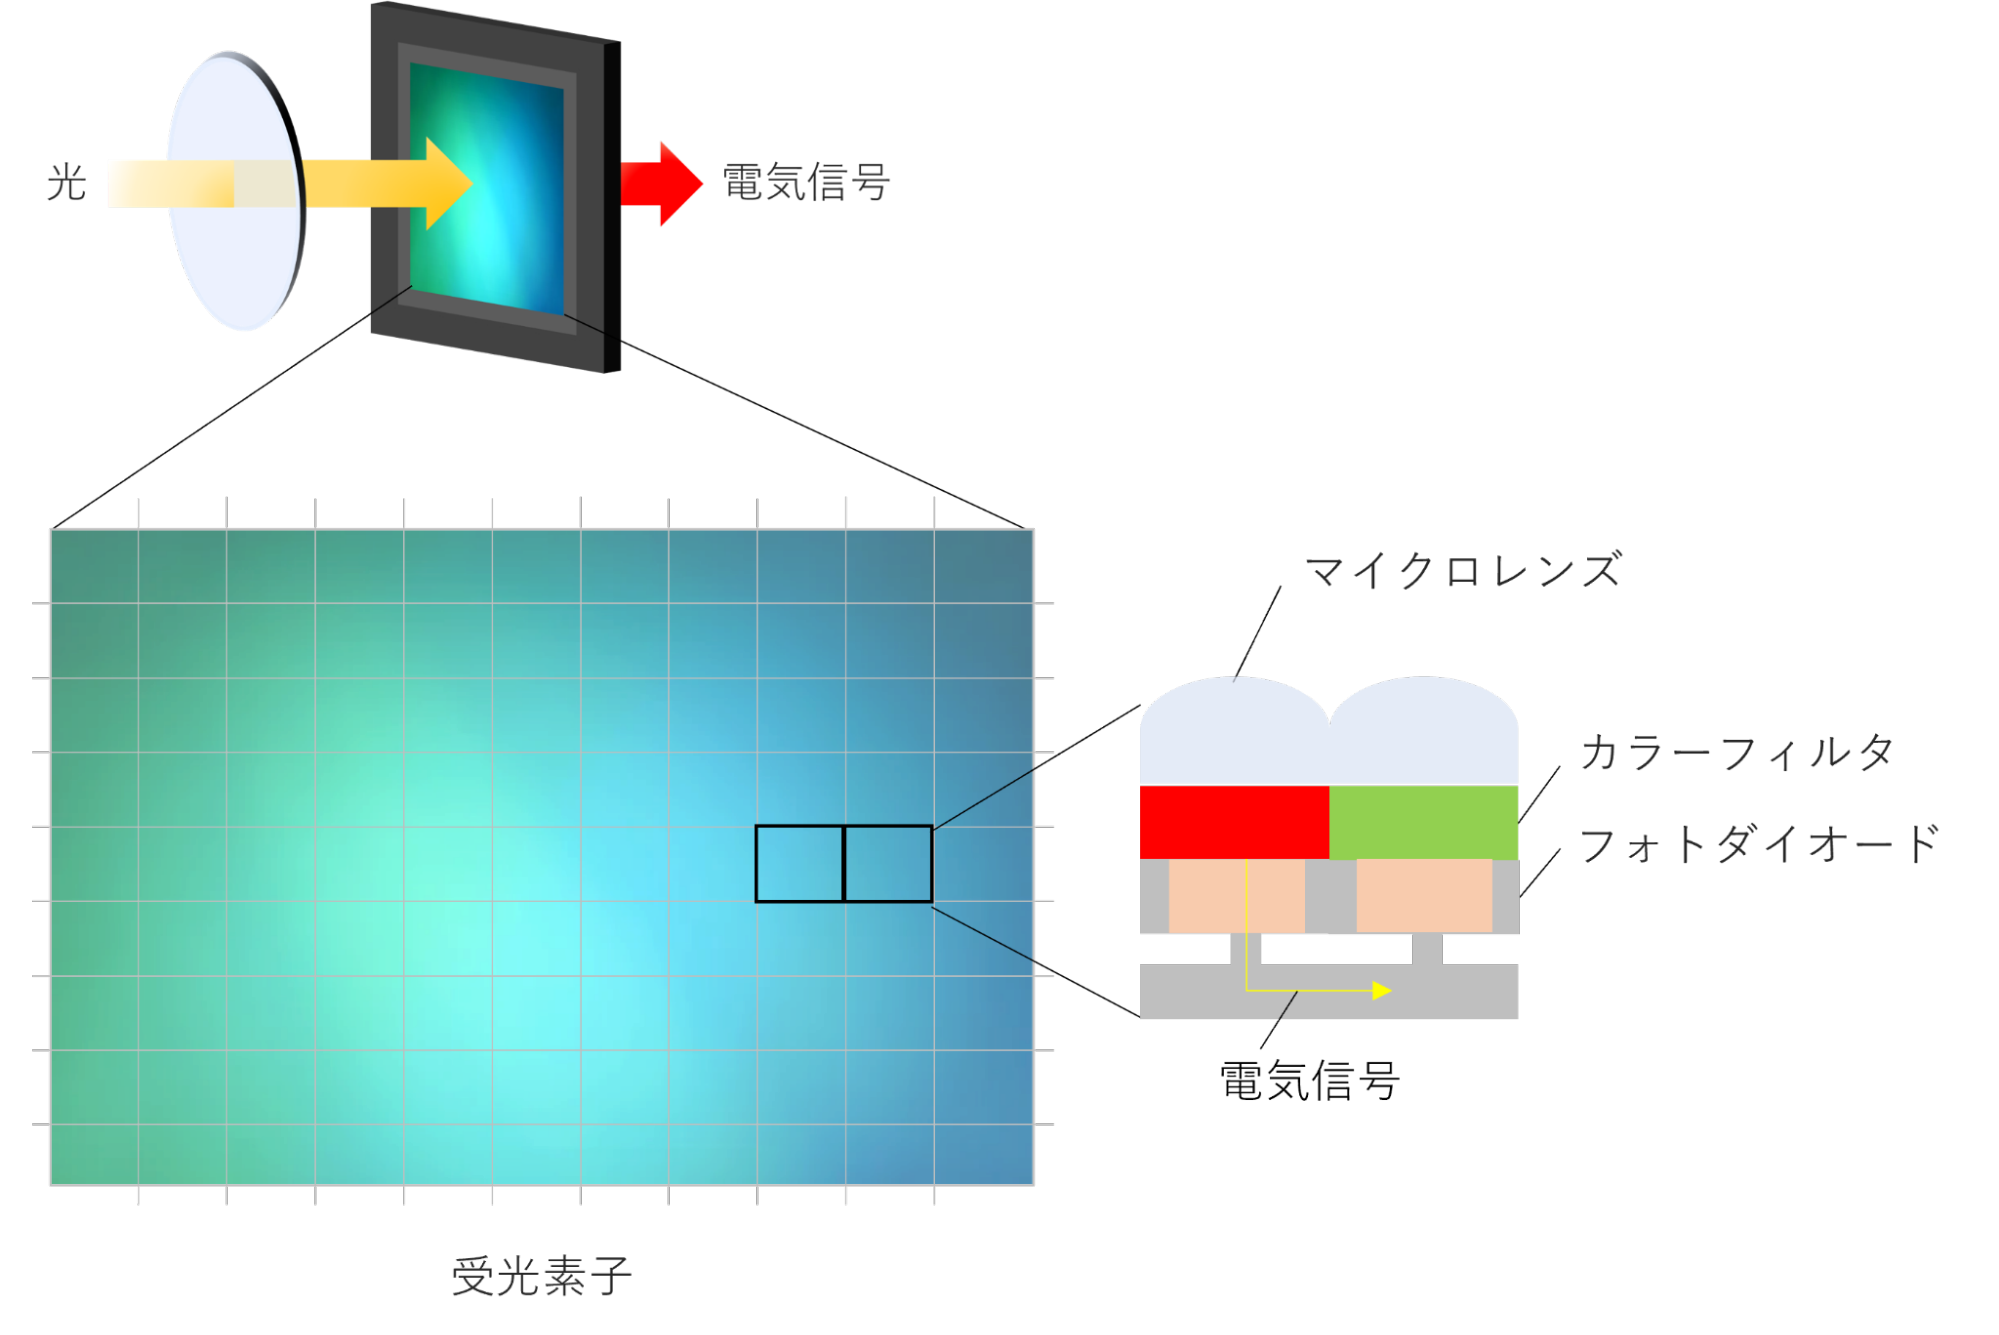 イメージセンサーの構造